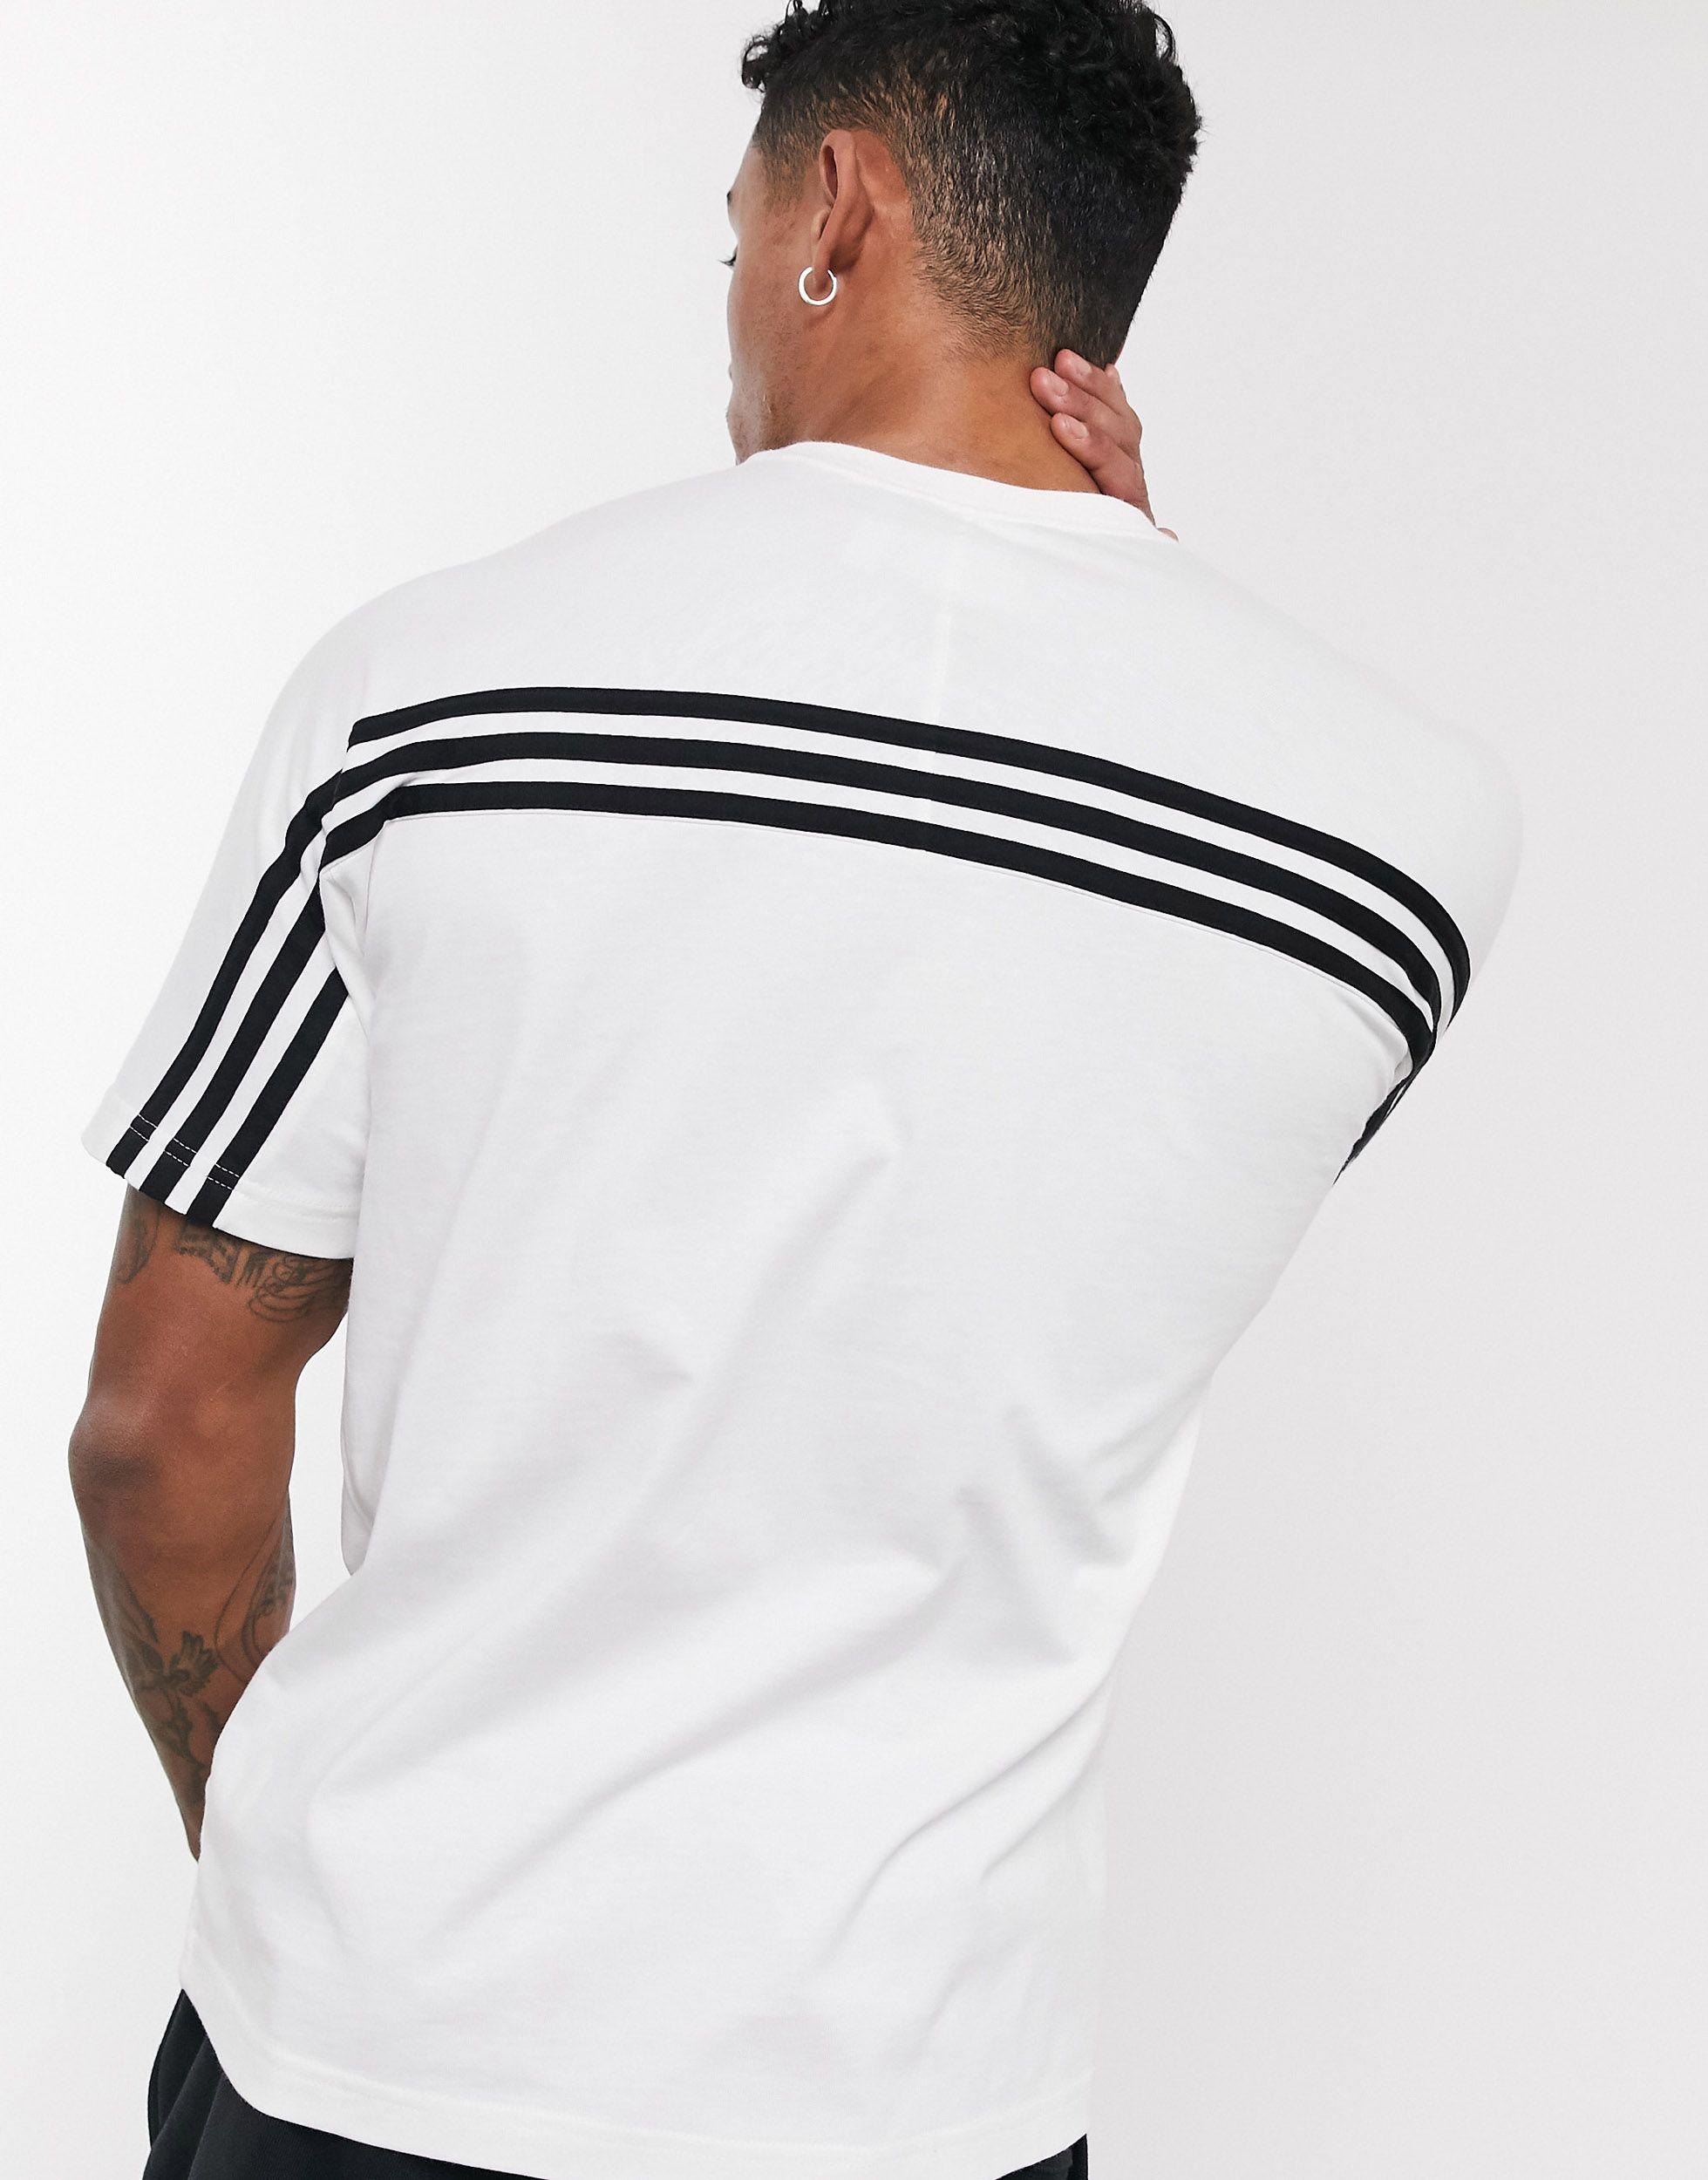 adidas Originals Cotton Sprt Three Stripe T-shirt in White for Men - Lyst